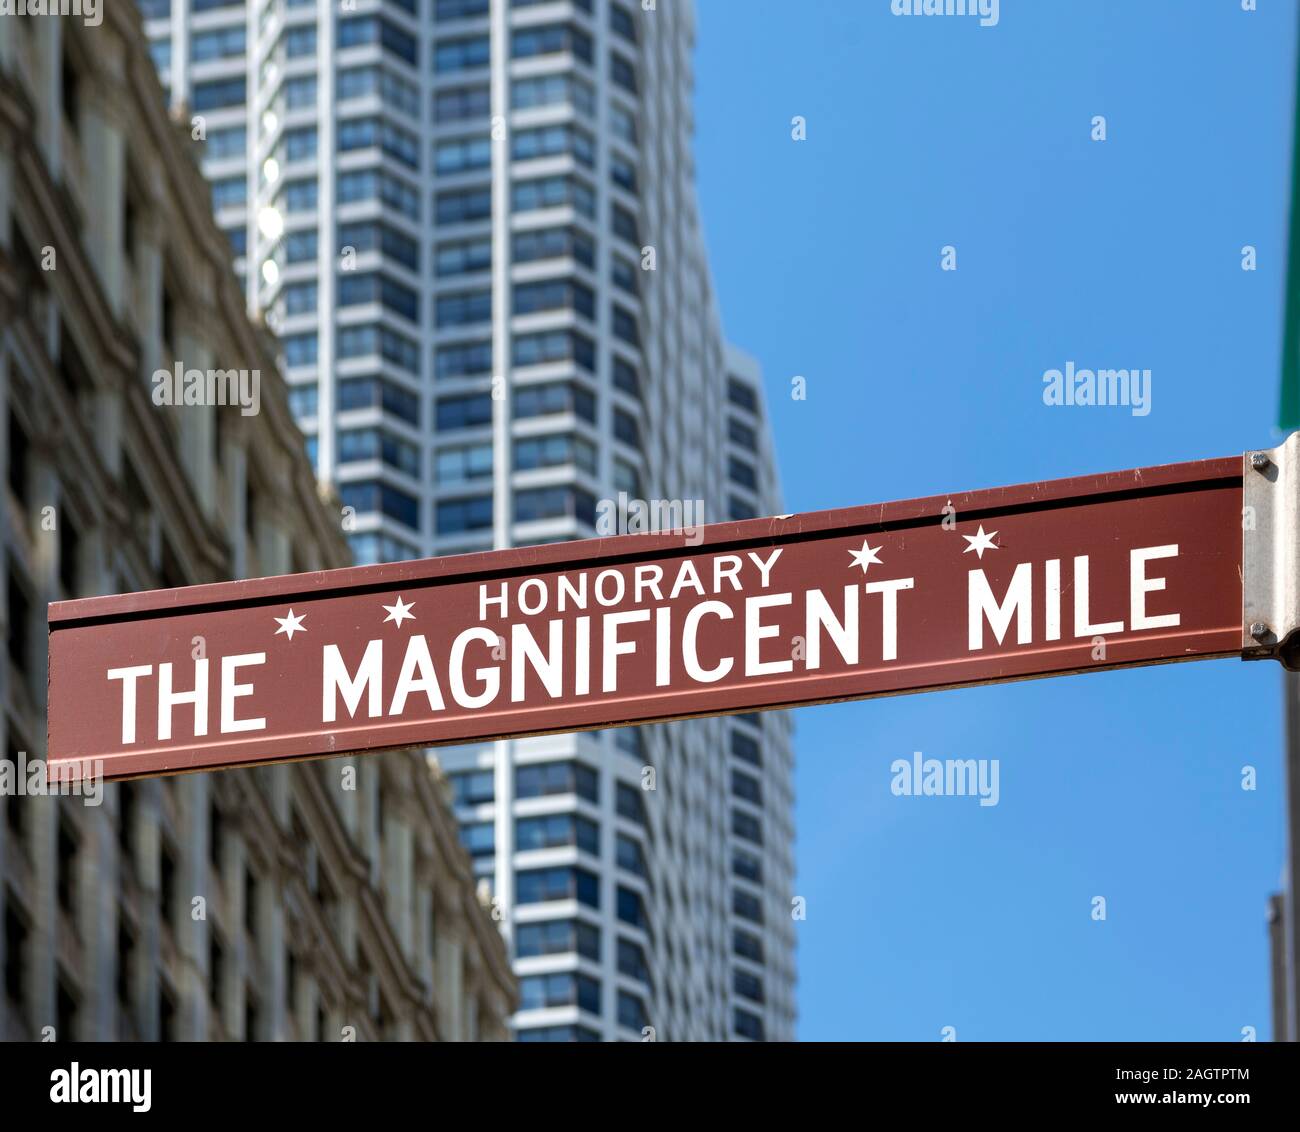 Magnificent Mile strada segno, Michigan Avenue, Chicago, Illinois, Stati Uniti d'America Foto Stock